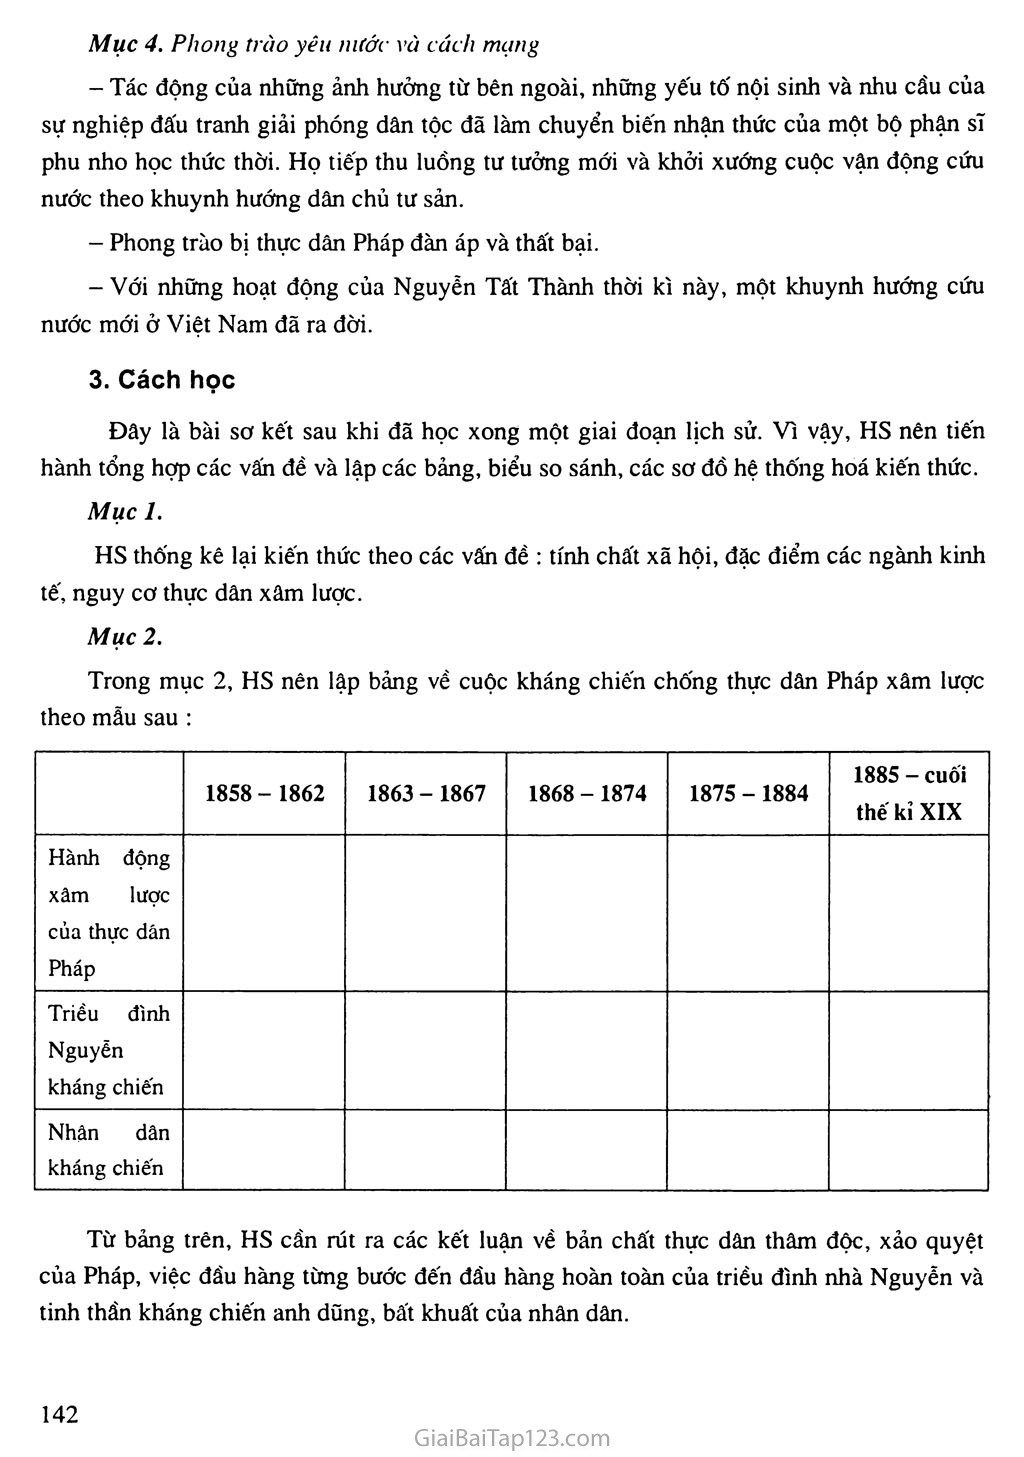 Sơ kết lịch sử Việt Nam (1858 - 1918) trang 2